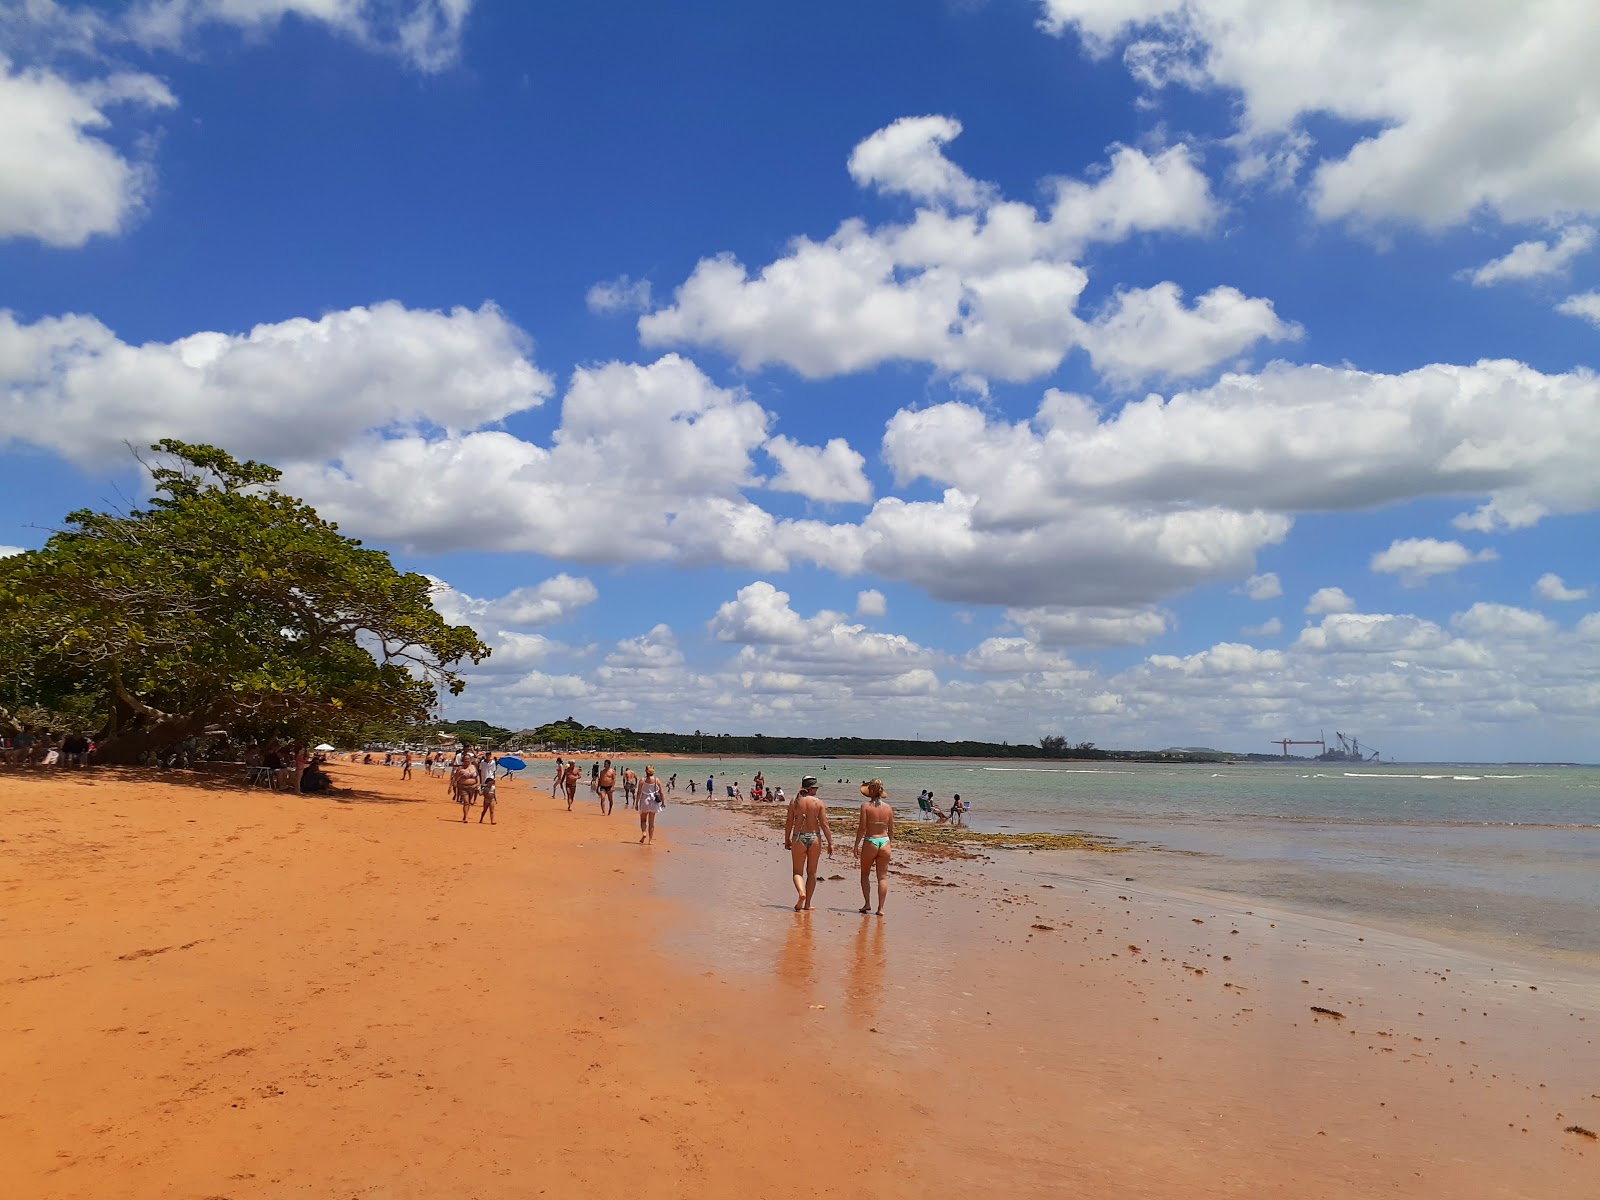 Mar Azul Plajı'in fotoğrafı geniş plaj ile birlikte